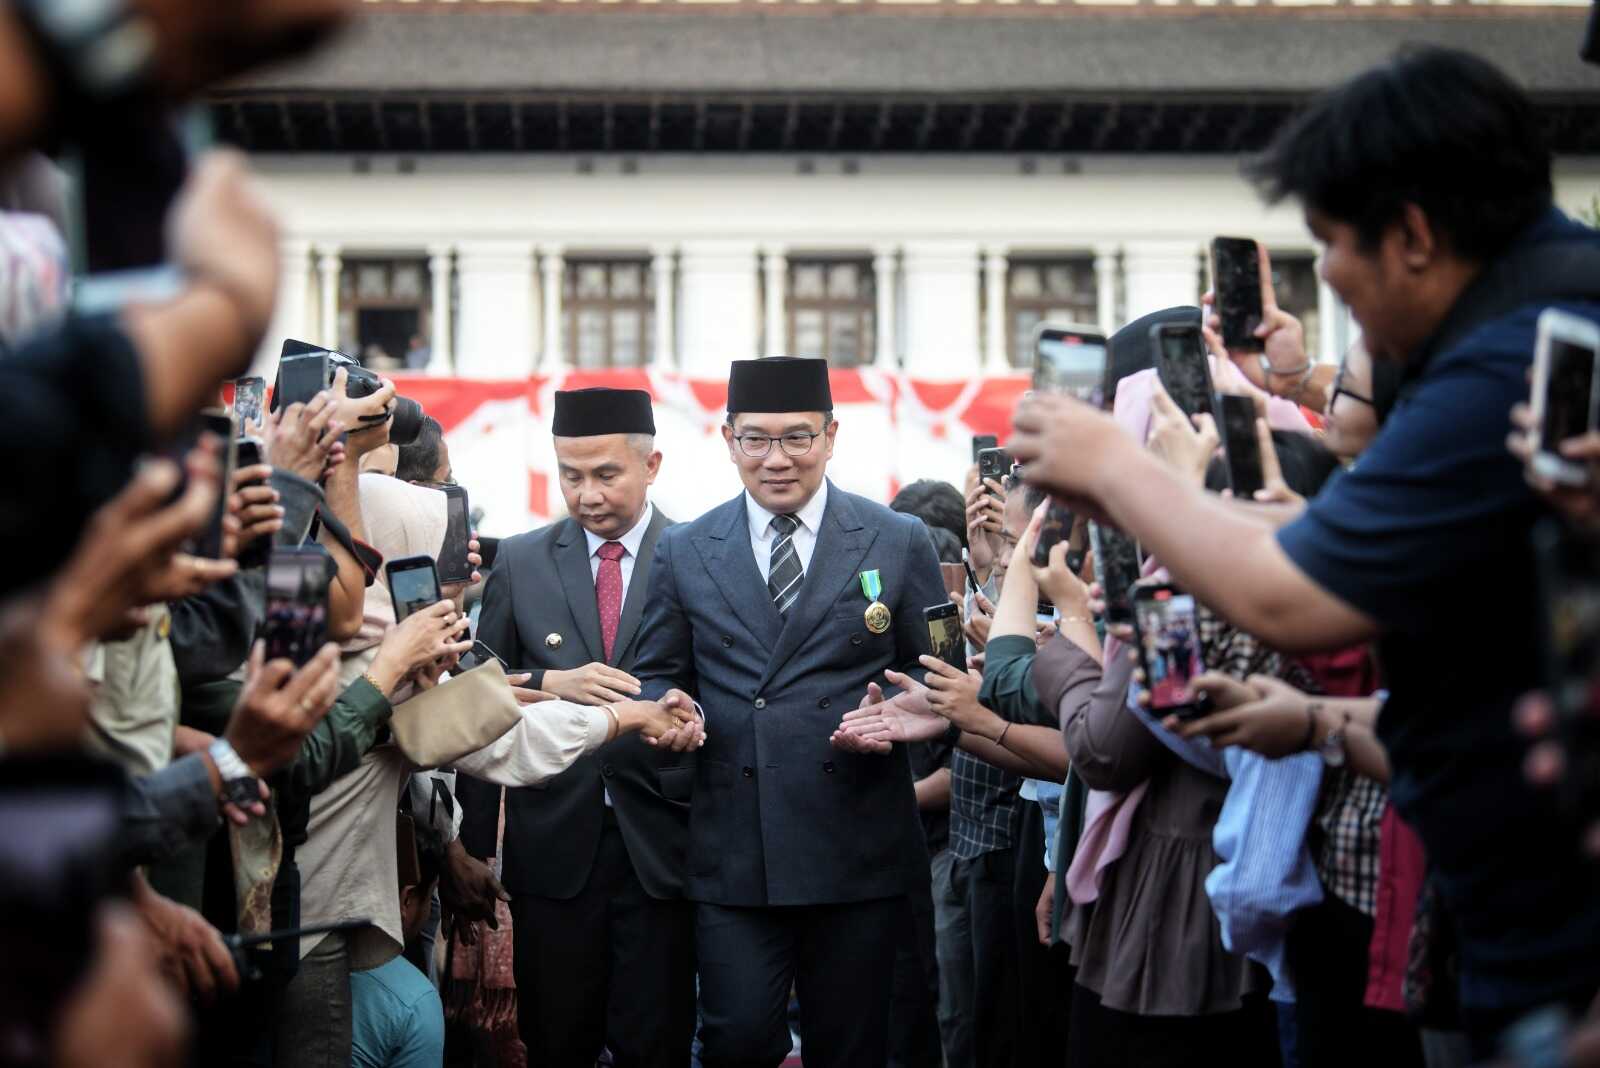 Survei Indikator Politik Indonesia Membuktikan Ridwan Kamil Unggul Sebagagi Kandidat Cawapres, Geser Erick Thohir